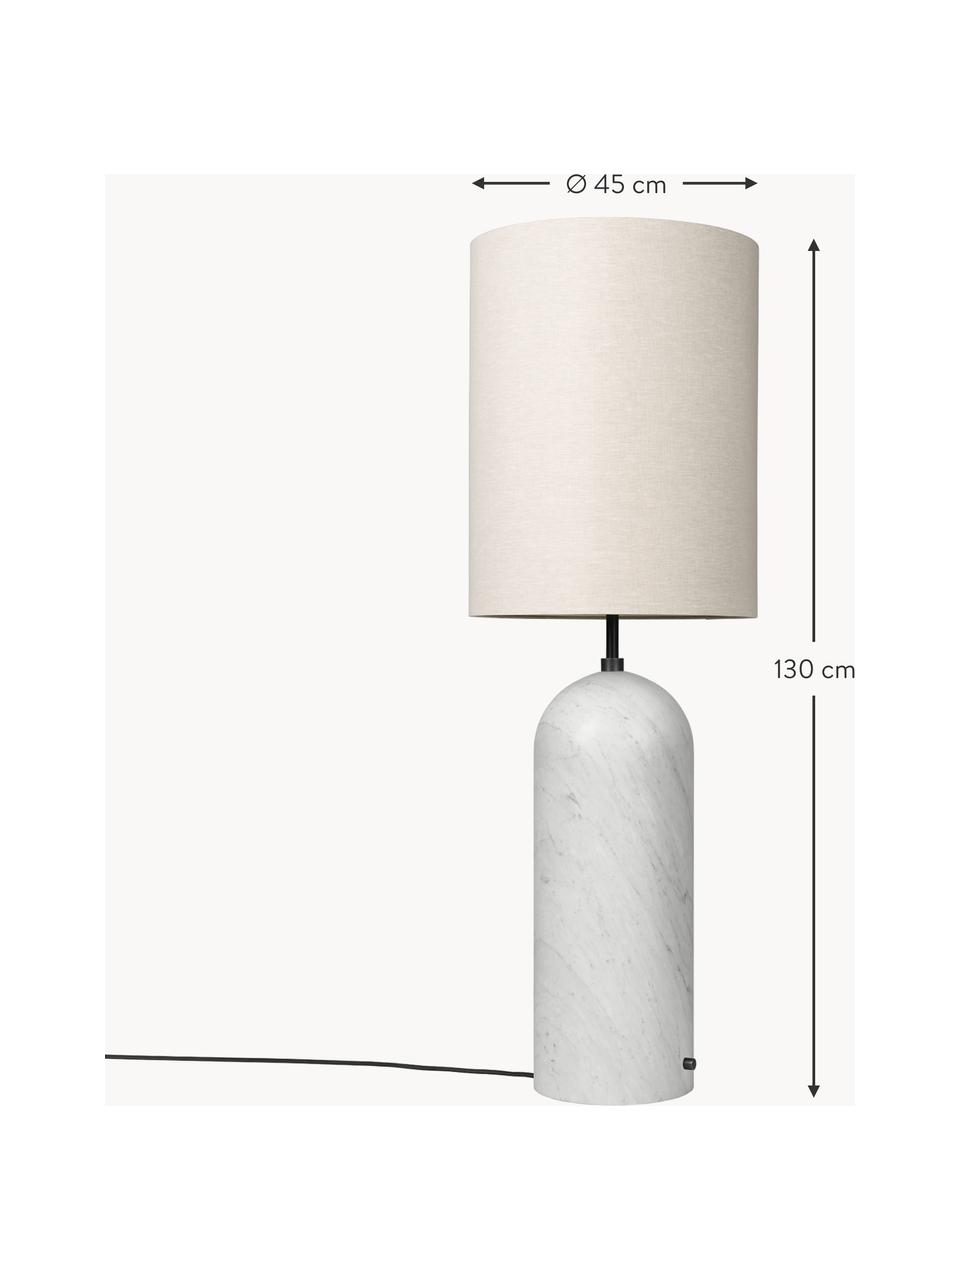 Lámpara de pie pequeña regulable con base de mármol Gravity, Pantalla: tela, Cable: plástico, Beige claro, blanco veteado, Al 130 cm